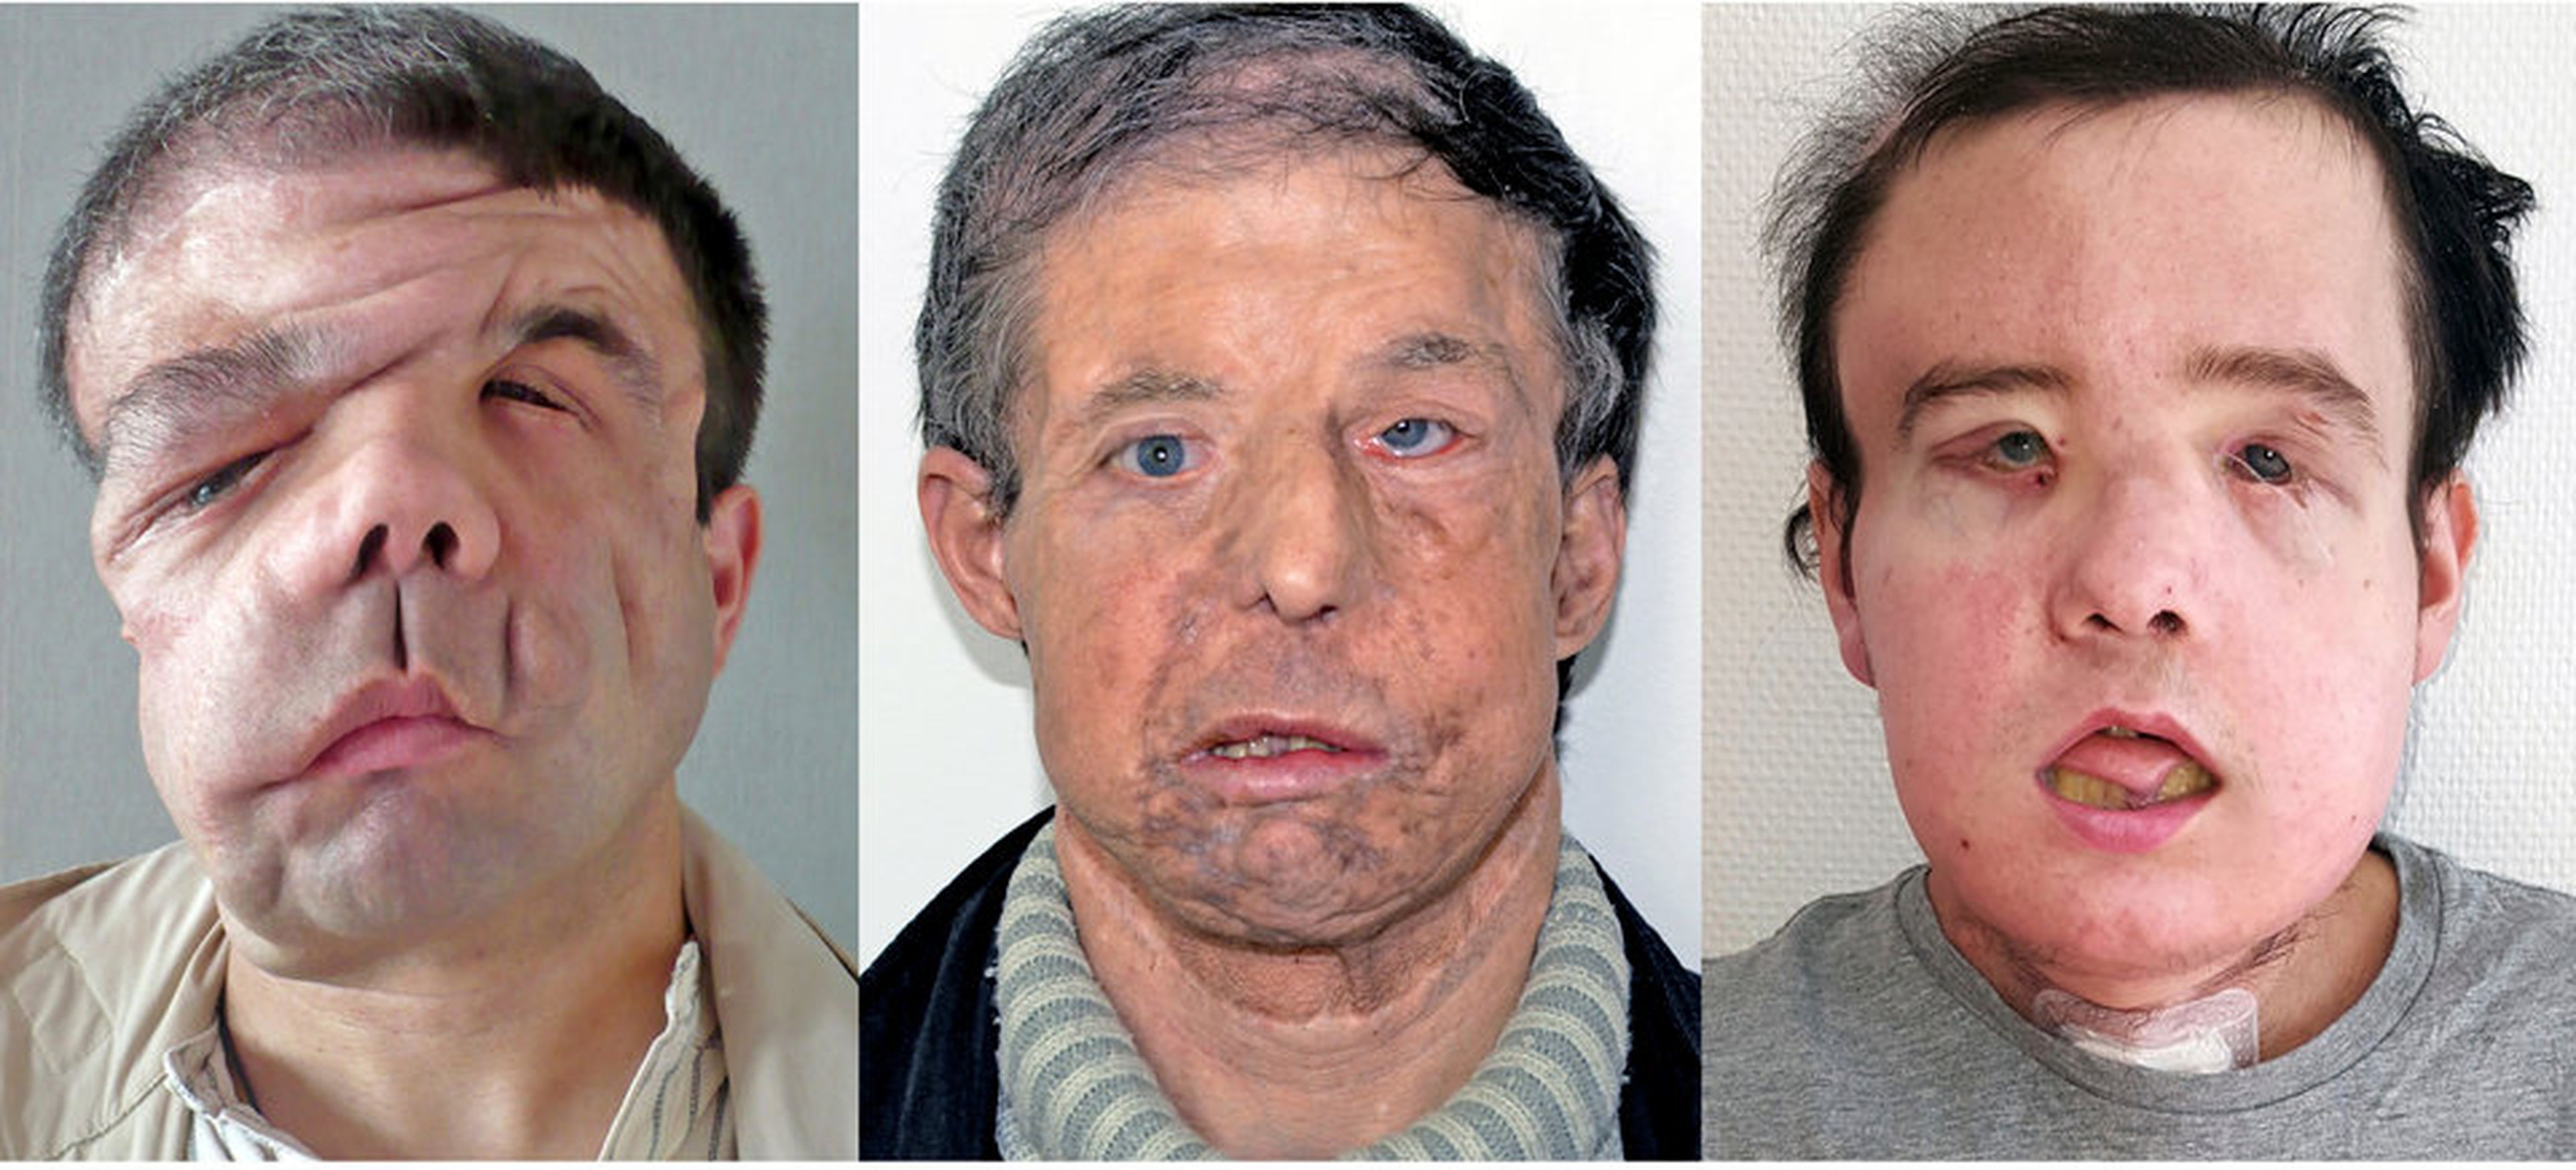 Los medios franceses se refieren a Hamon, quien recibió un trasplante de cara en 2010 y otro este año, como el "hombre con tres caras".